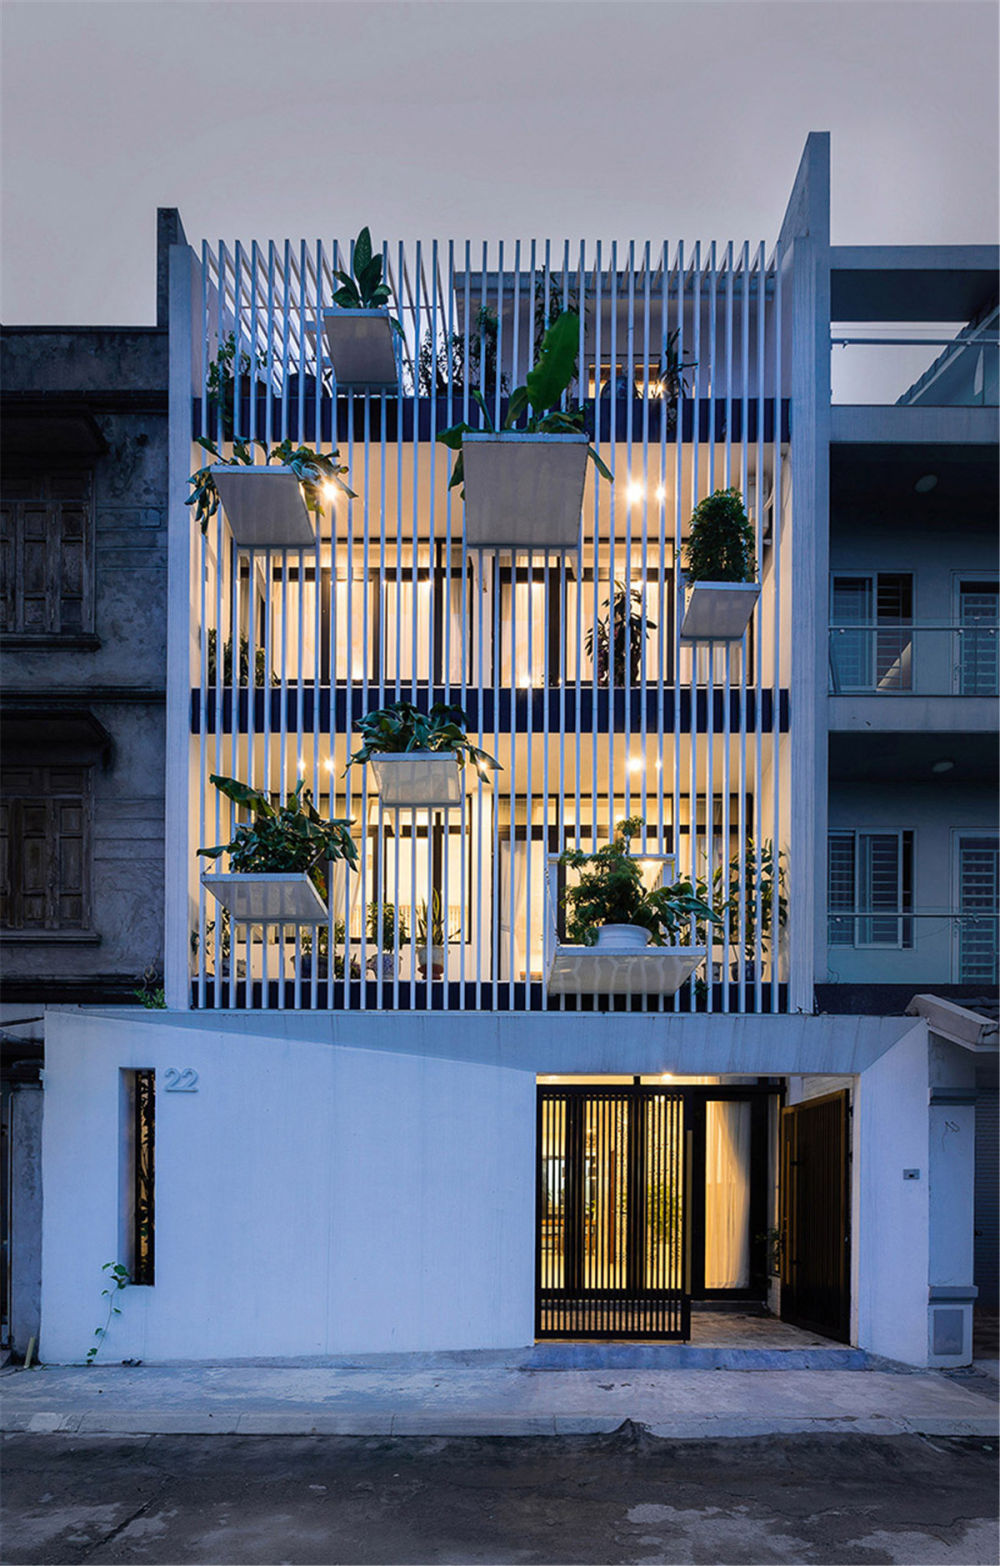 DANstudio-TH-house-tree-balconies-hanoi-vietnam-designboom-02.jpg